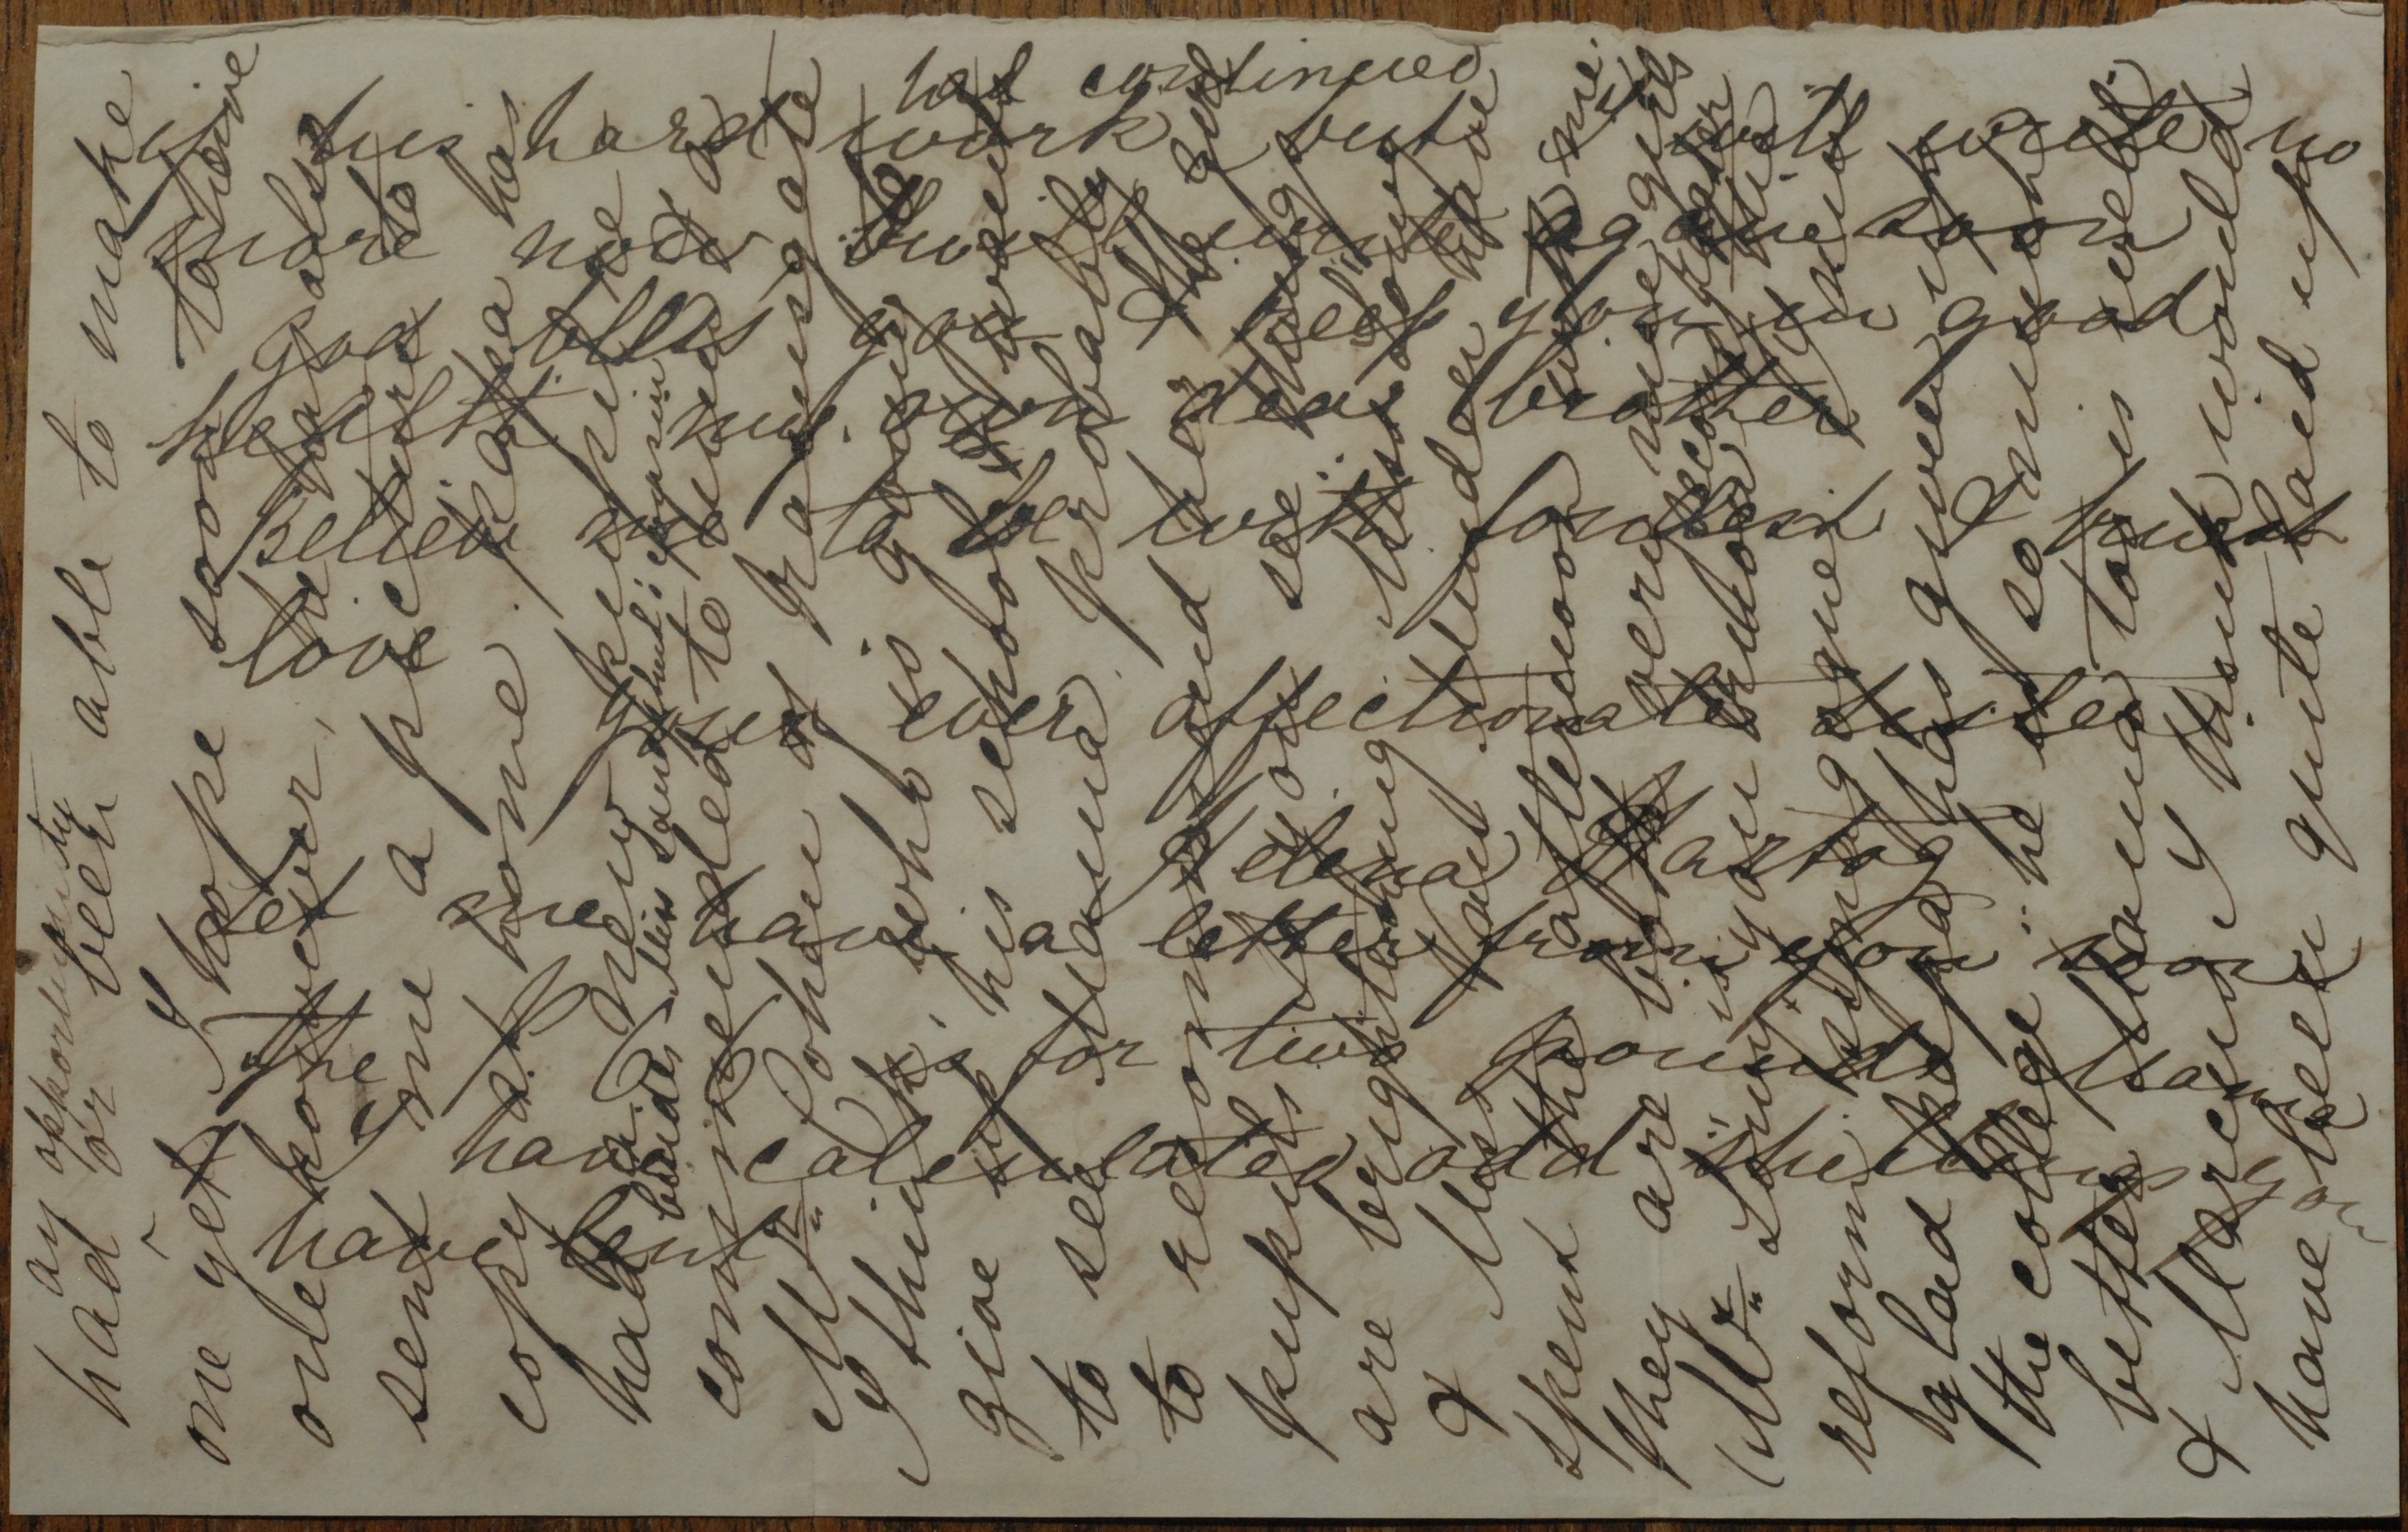 Numa's letters